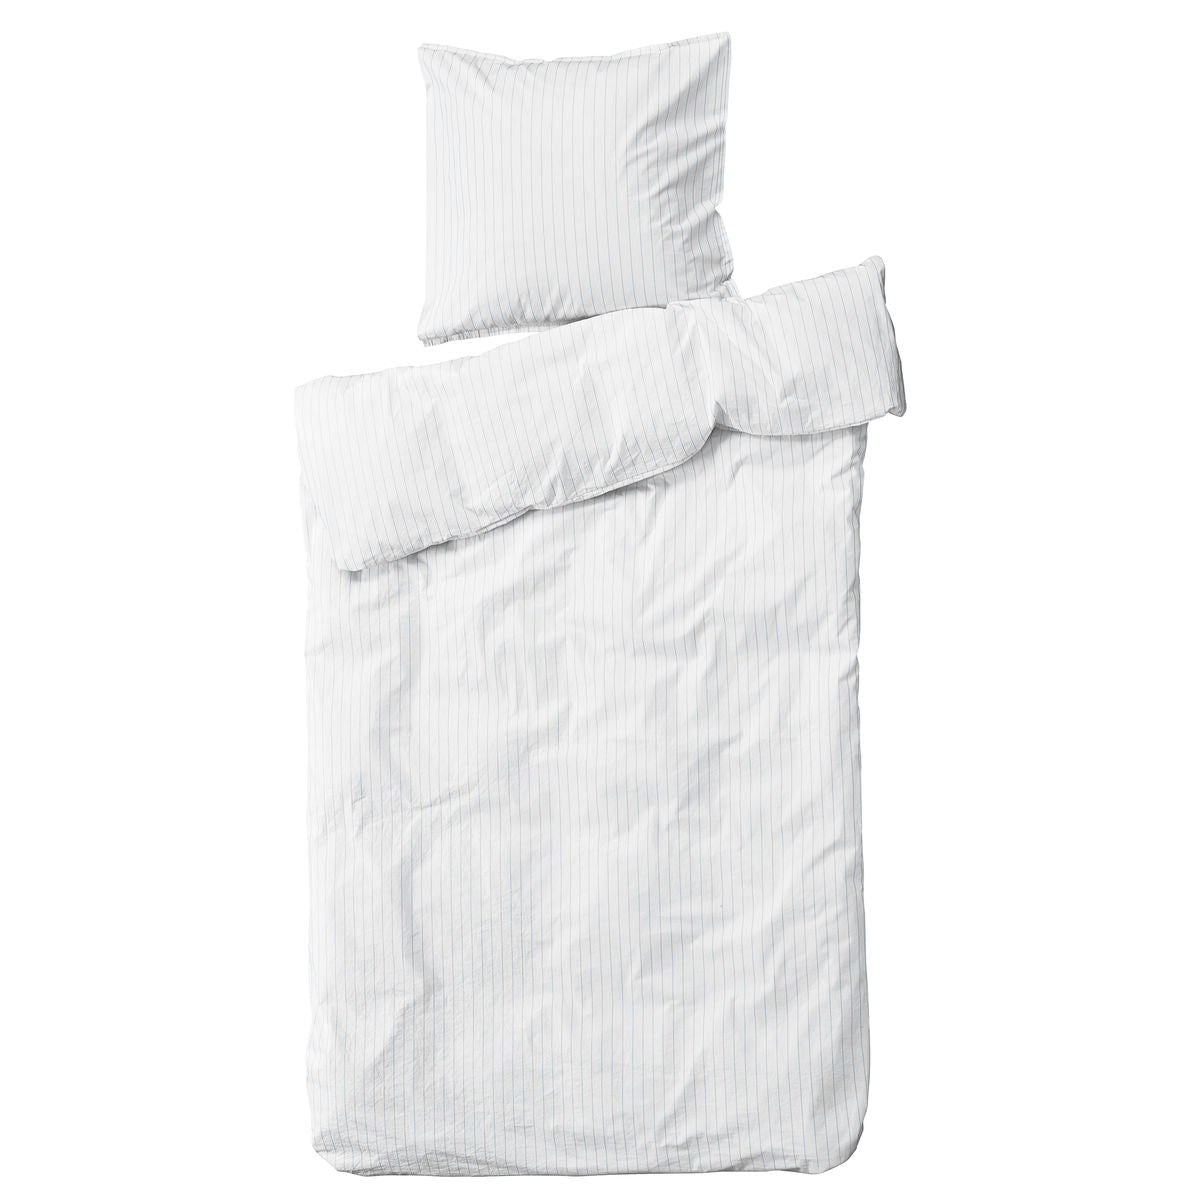 ByNORD sengetøj - 140x220 - Hvid med blå striber